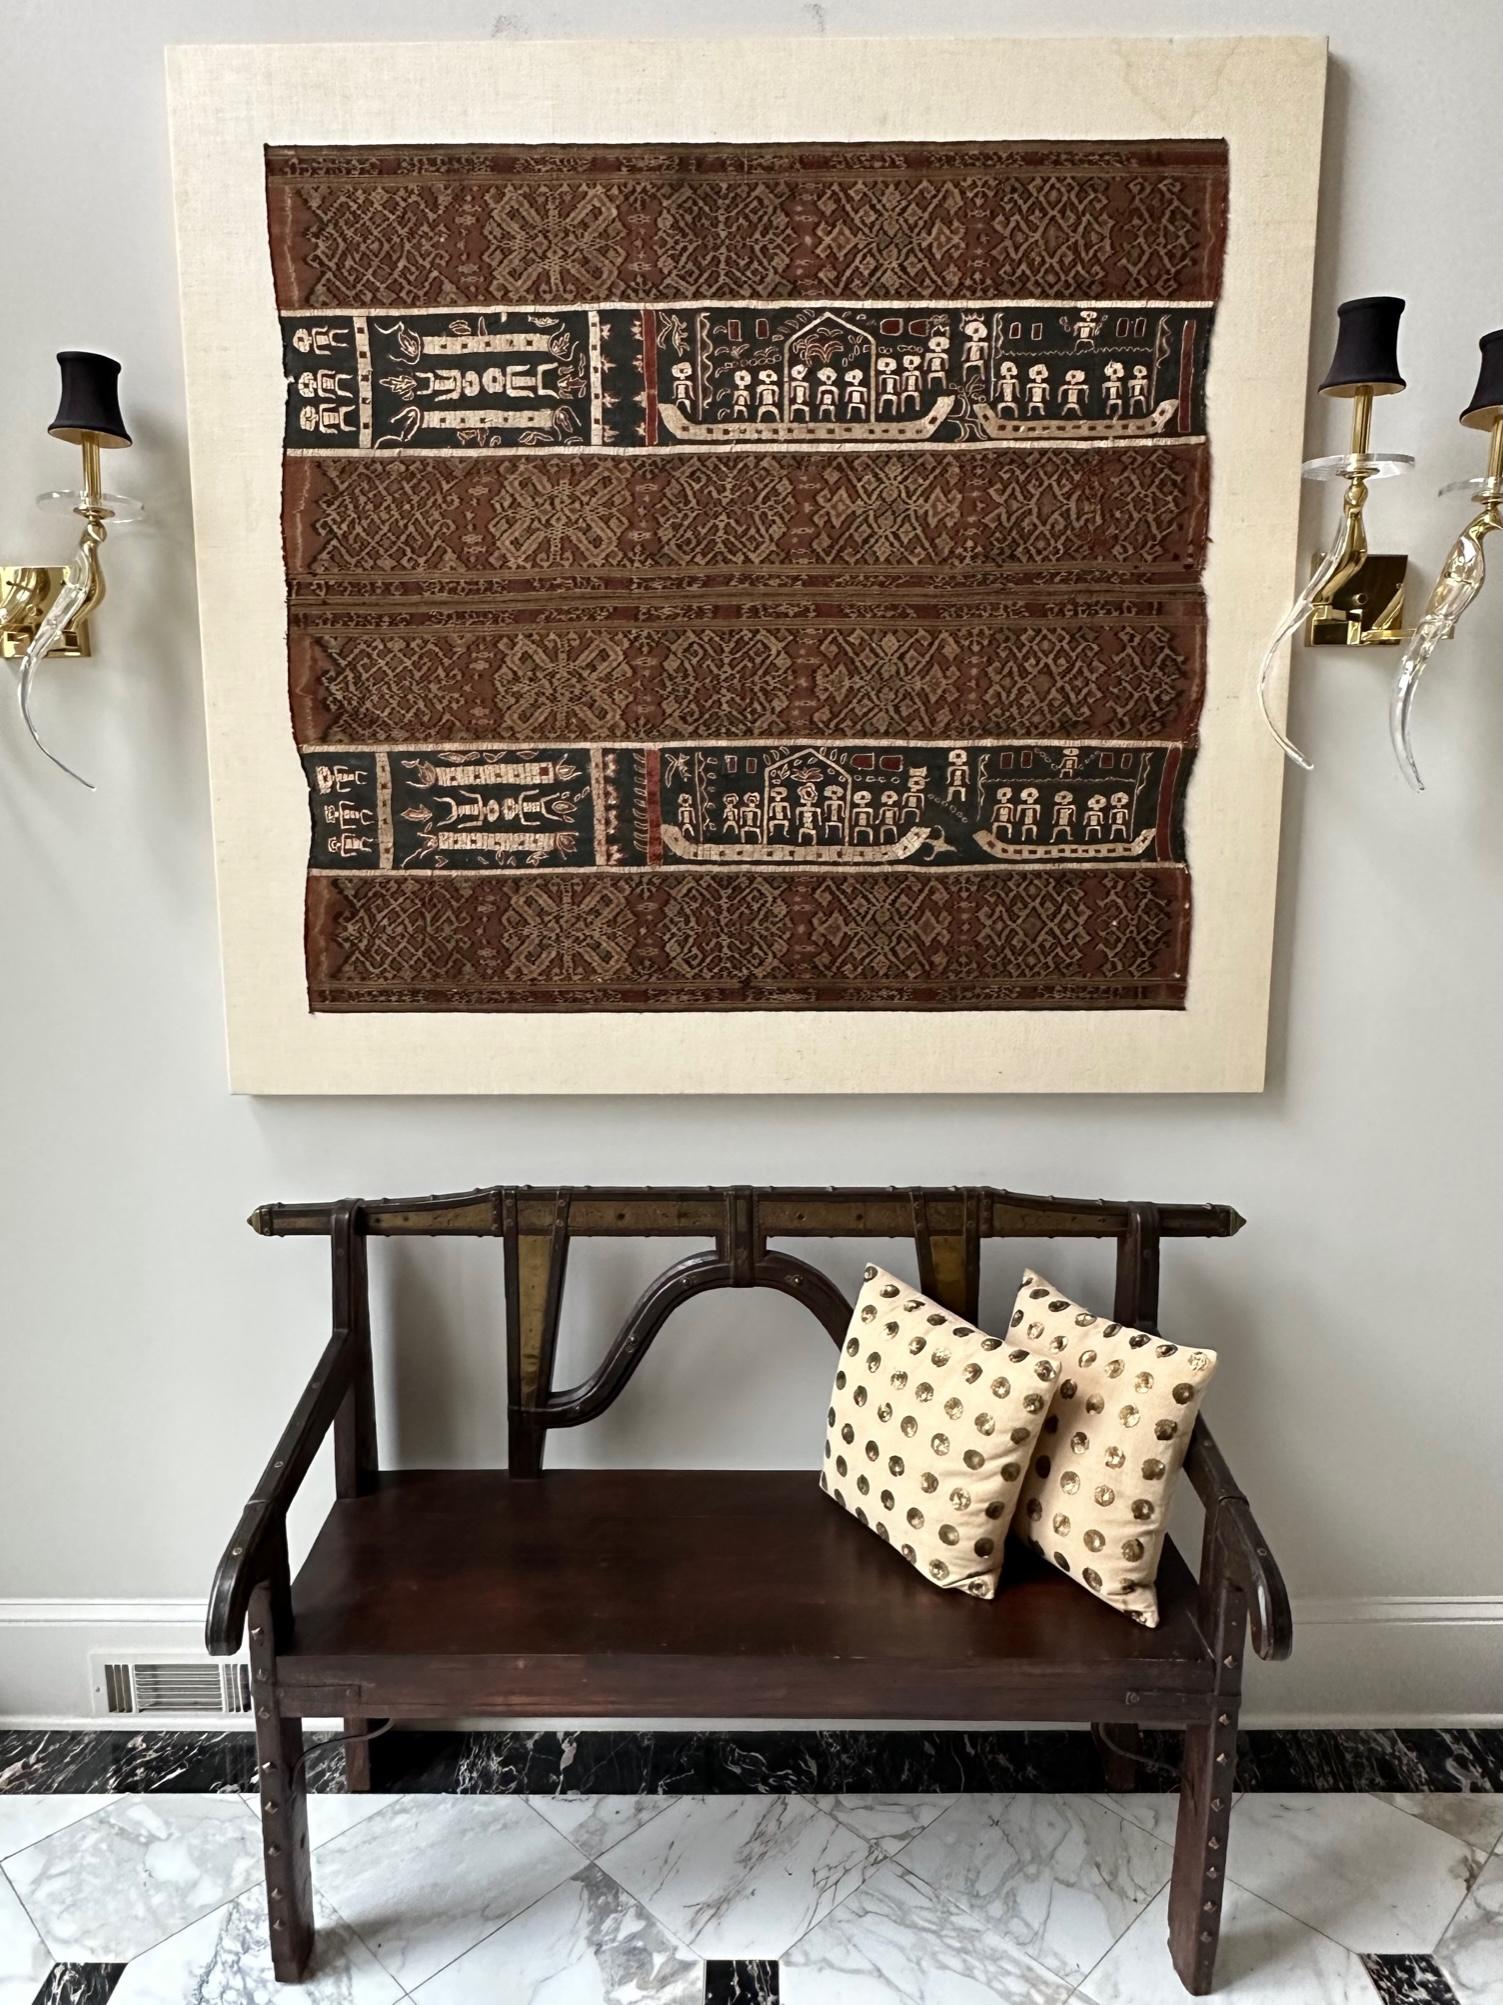  Ein indonesisches Textilpanel, das professionell auf einer Leinenleinwand präsentiert wird. Auf Wunsch kann es für einen einfachen und kostengünstigen Versand von der Leinwand abgenommen werden. Das Textil wurde mit alten gewebten Ikat-Paneelen und